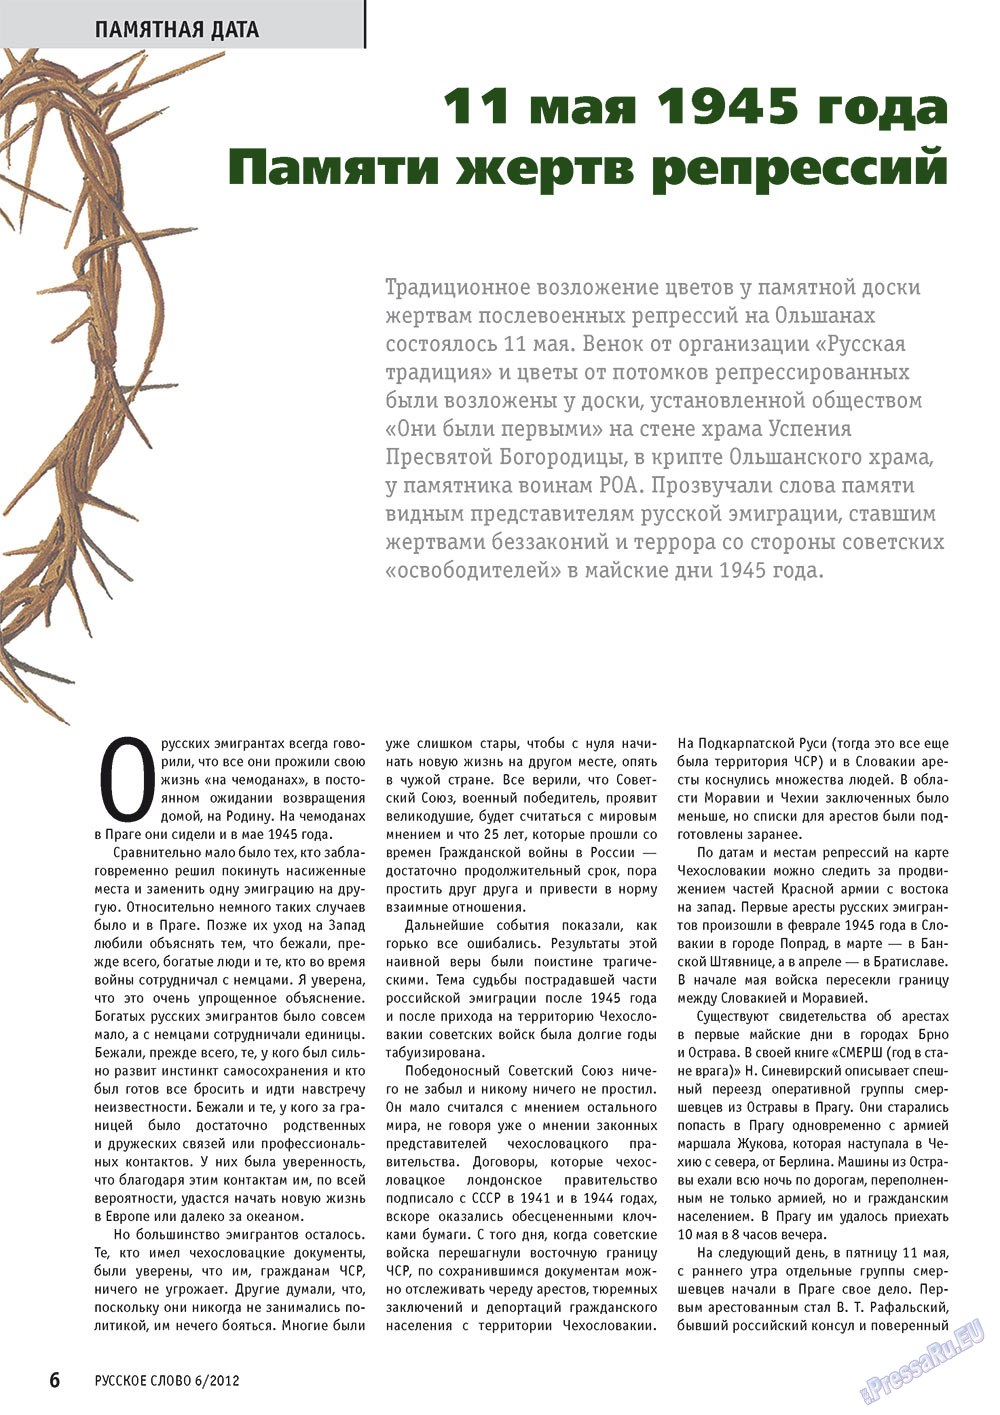 Русское слово, журнал. 2012 №6 стр.6